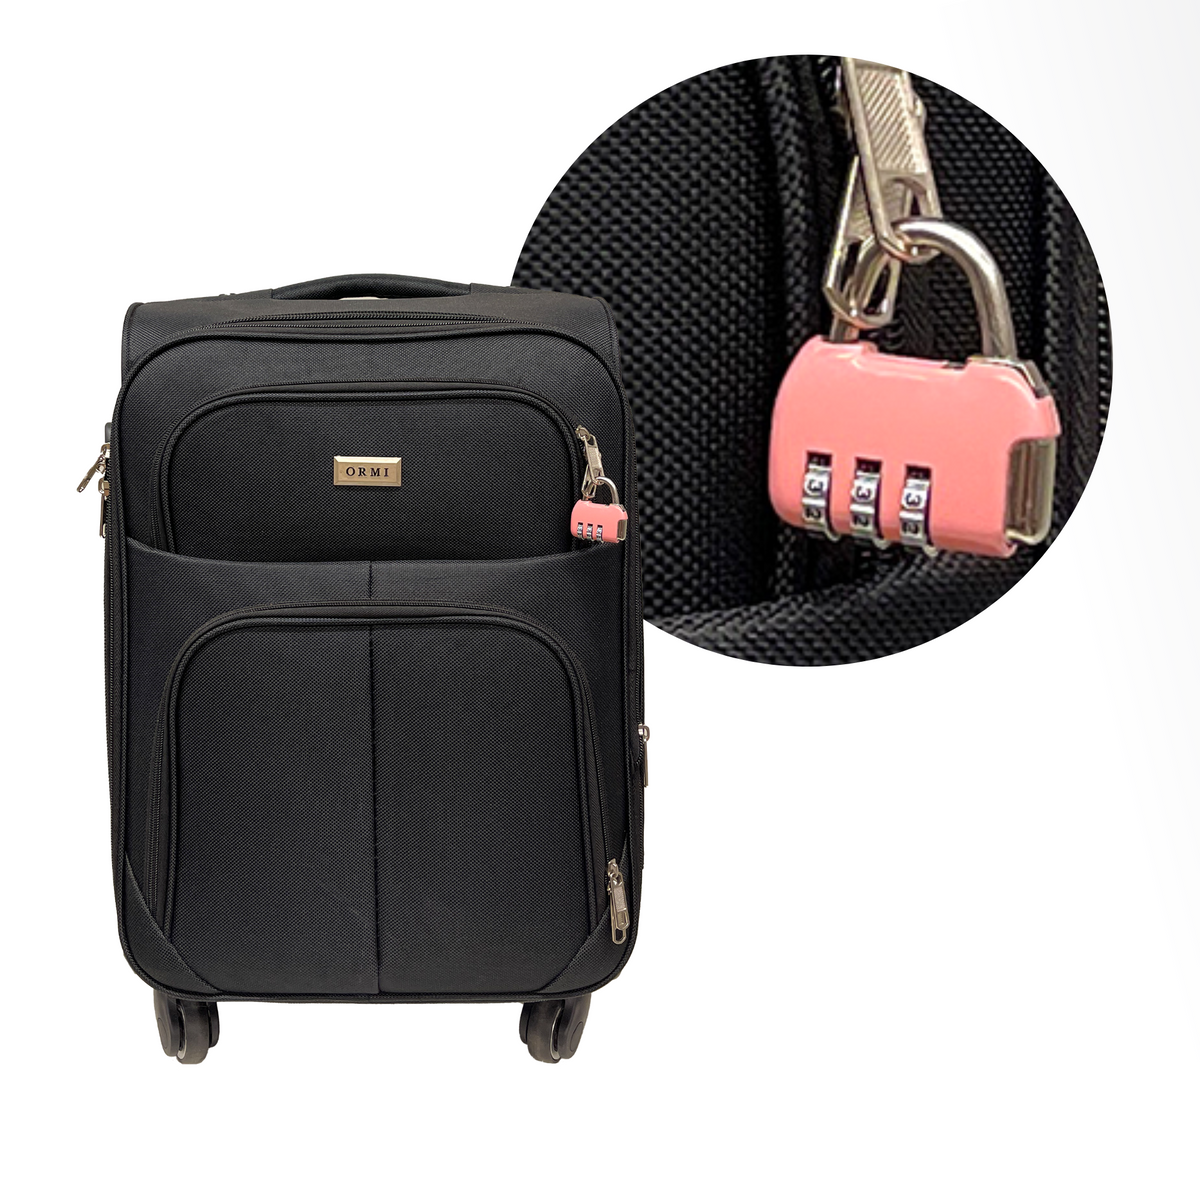 Kombinacijska ključavnica z 3 številkami za kovček, prtljago, potovalno torbo in nahrbtnike